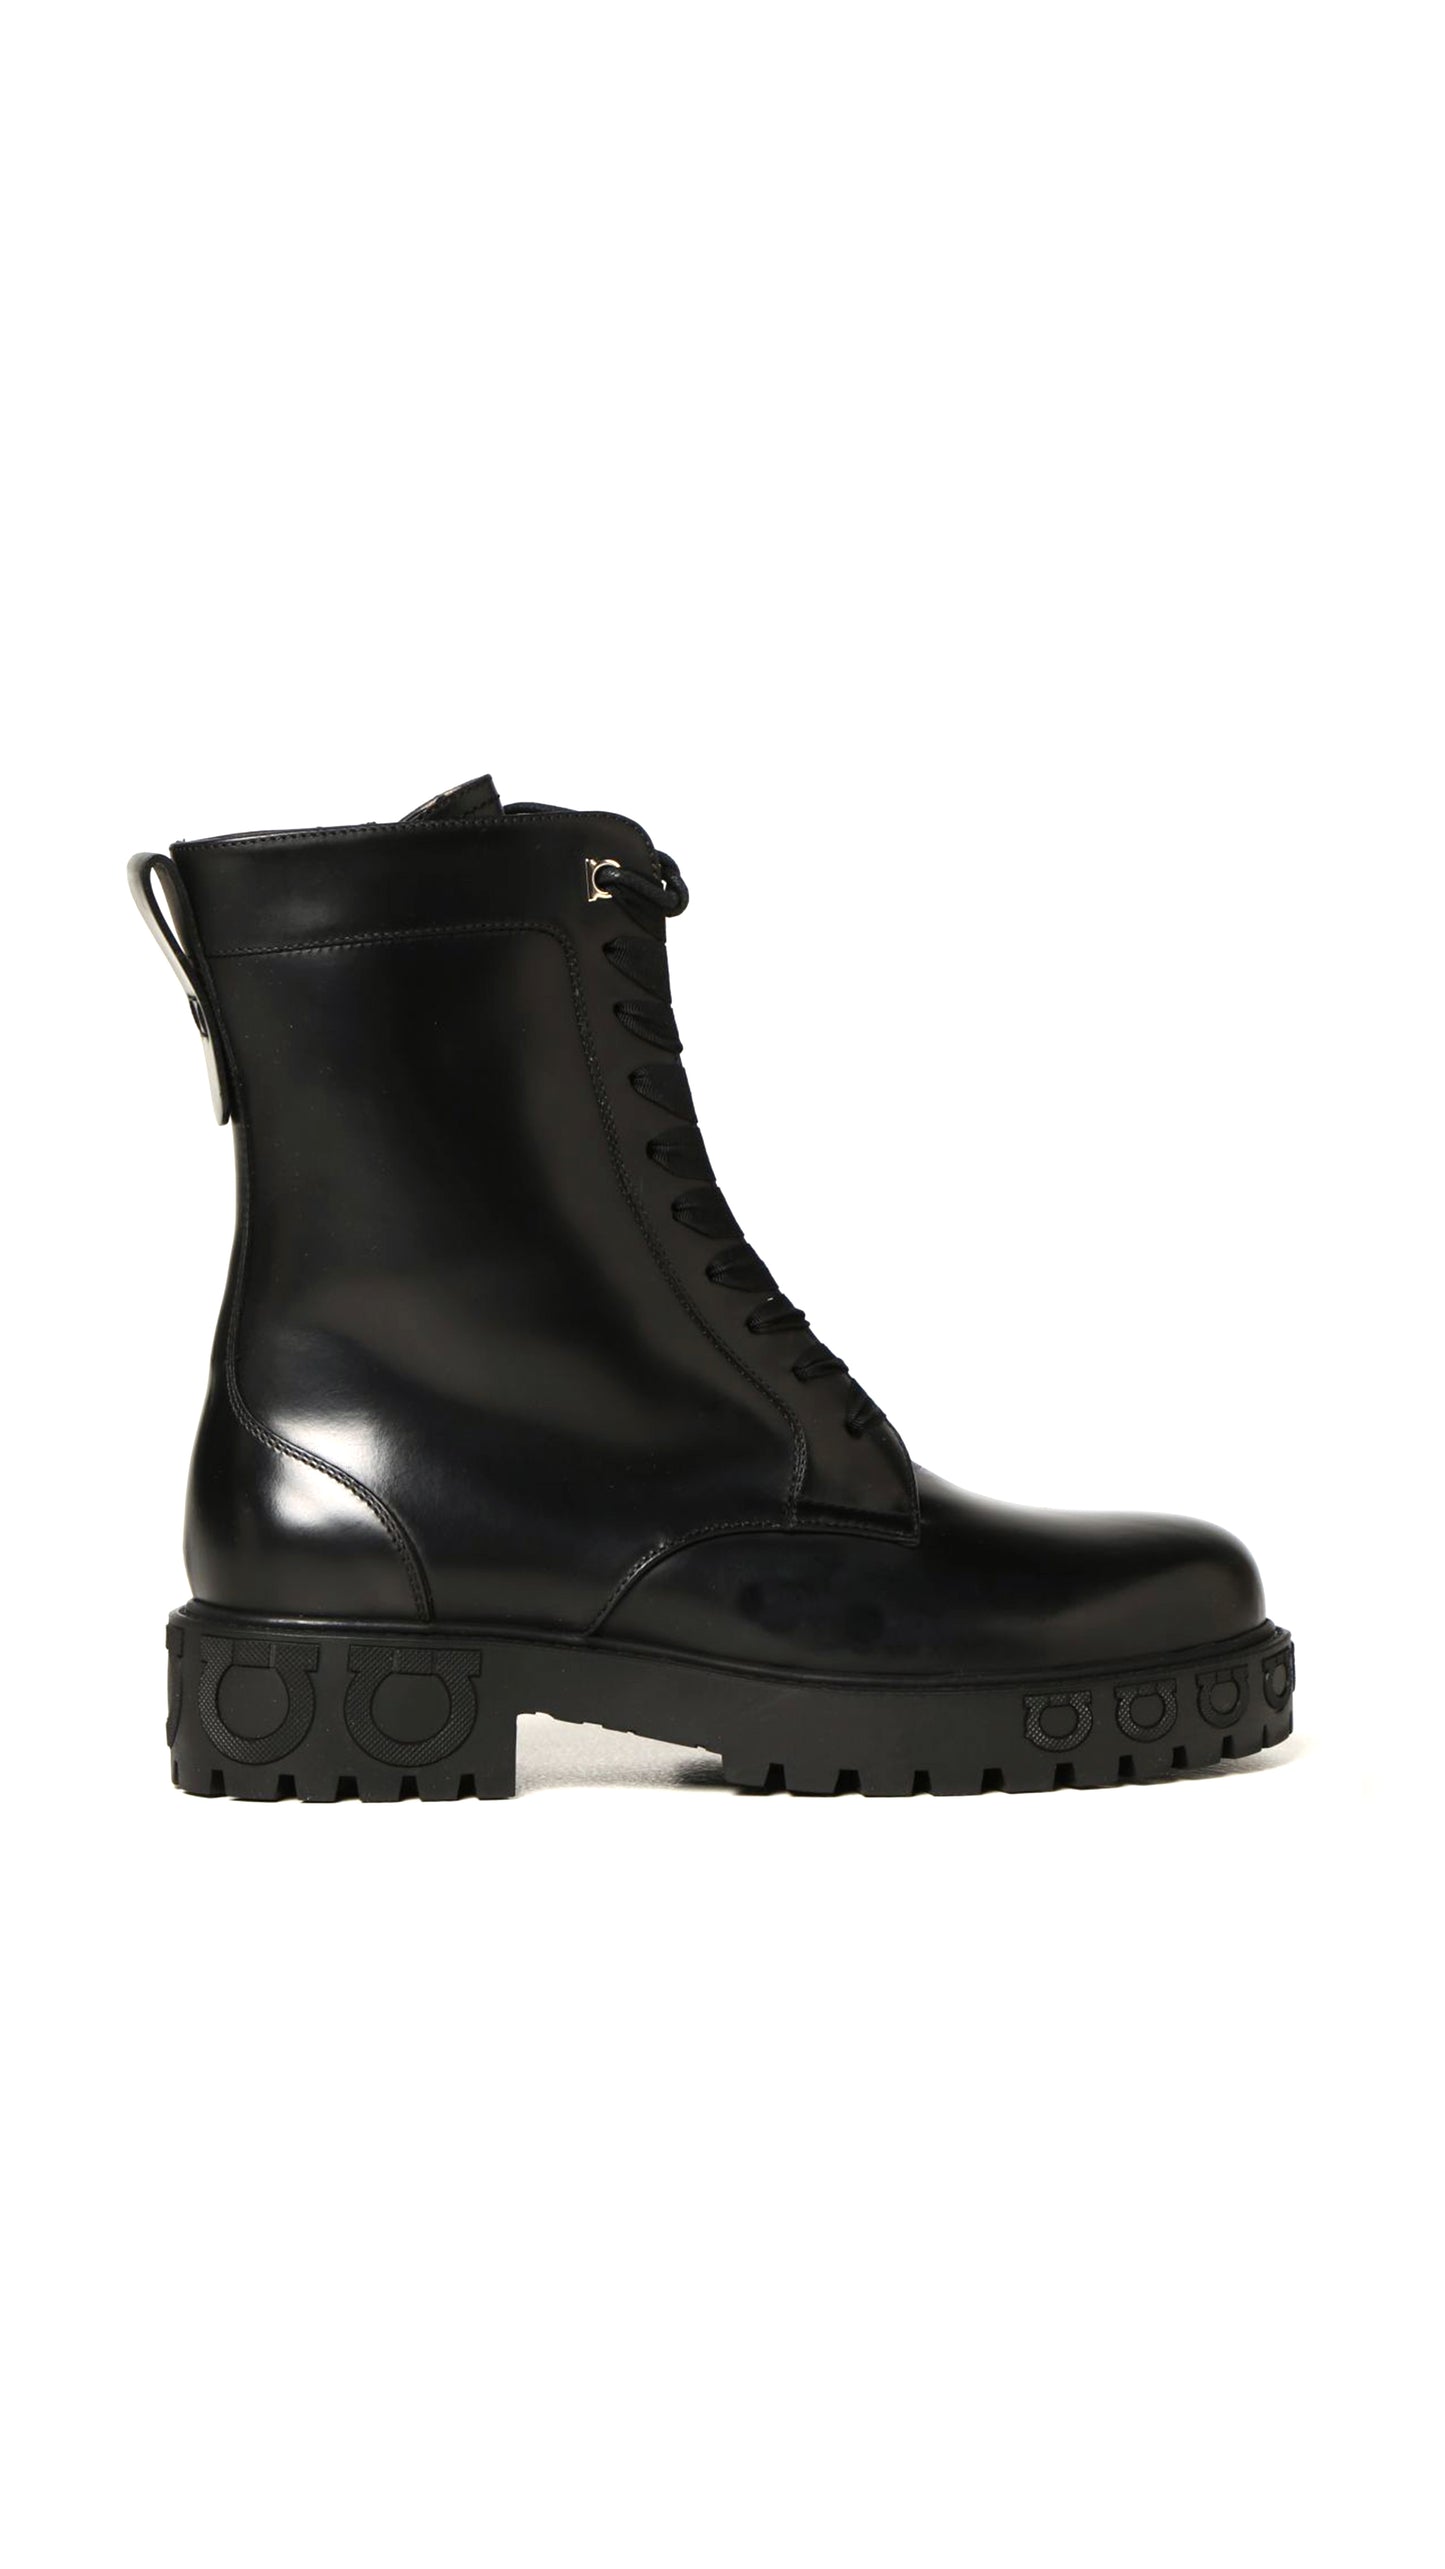 Gancini Boots In Calfskin - Black